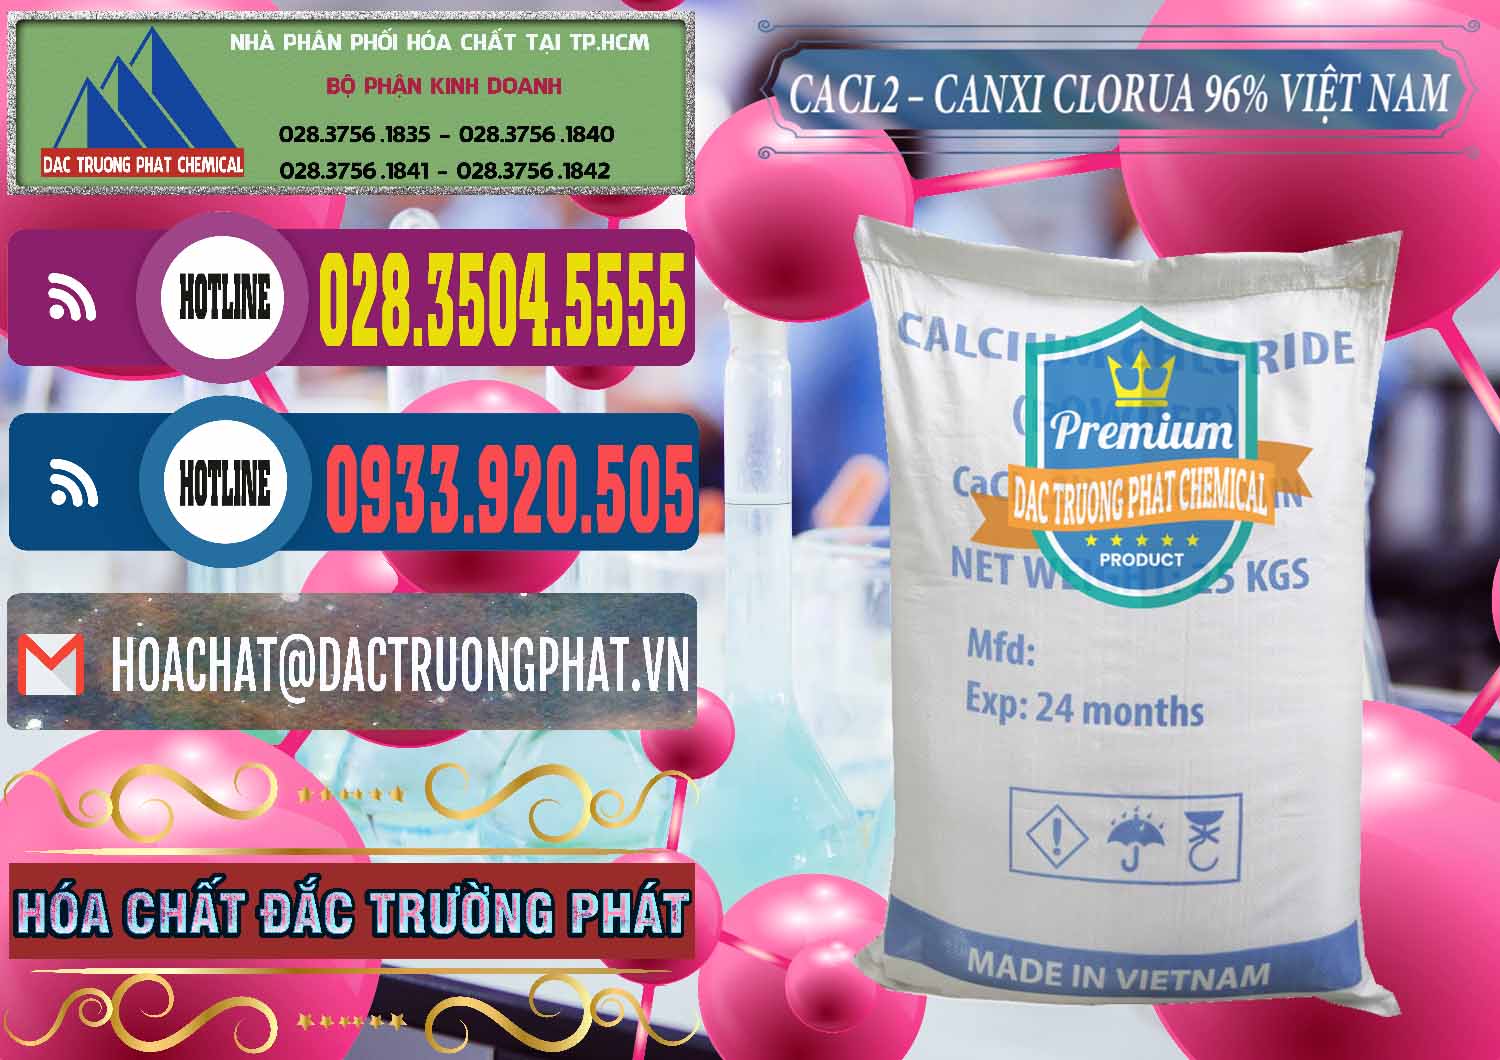 Cty chuyên kinh doanh - cung cấp CaCl2 – Canxi Clorua 96% Việt Nam - 0236 - Cty bán _ phân phối hóa chất tại TP.HCM - muabanhoachat.com.vn